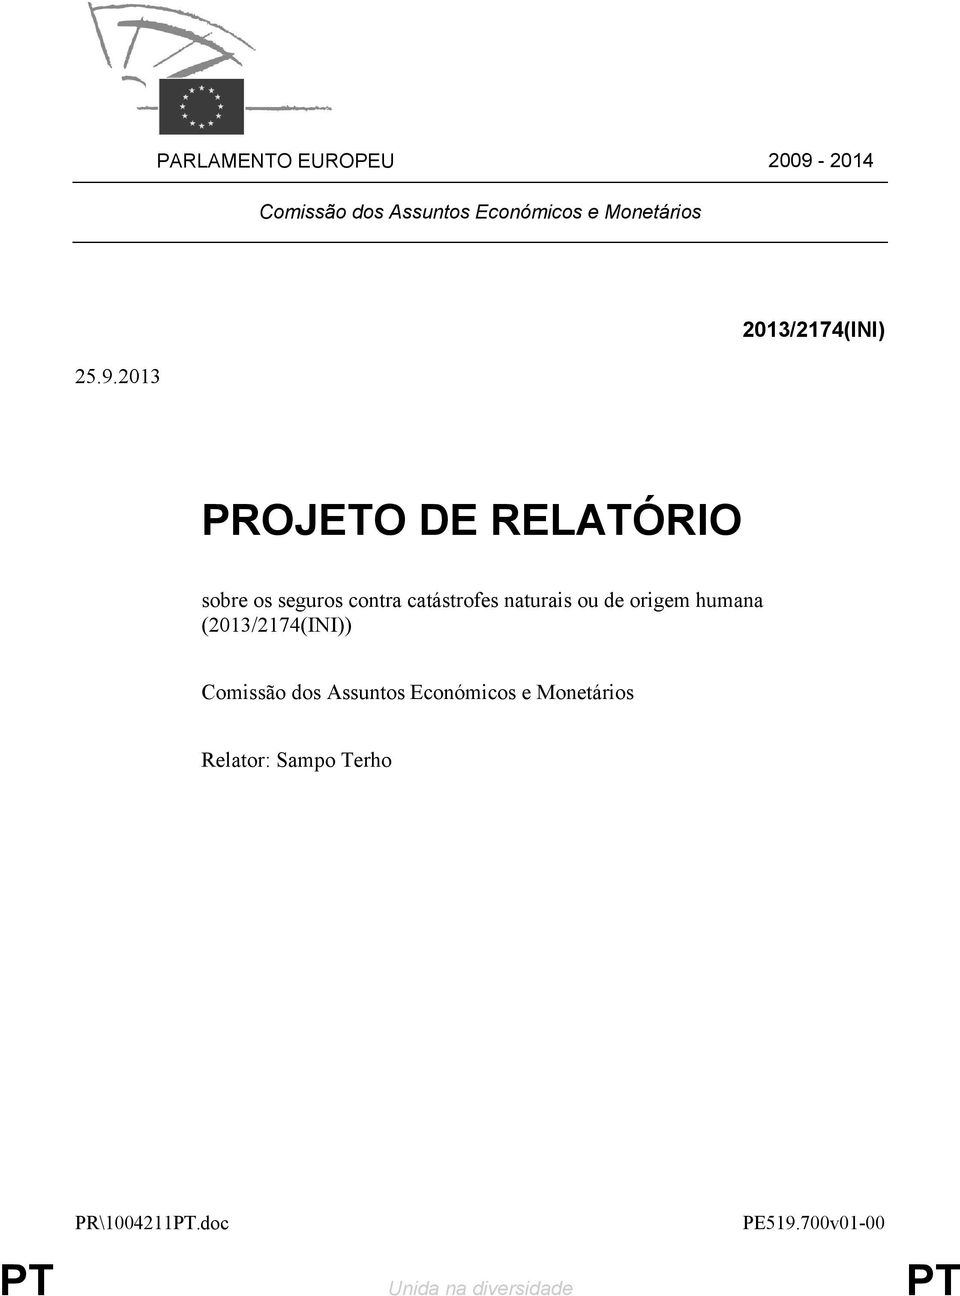 2013 2013/2174(INI) PROJETO DE RELATÓRIO sobre os seguros contra catástrofes